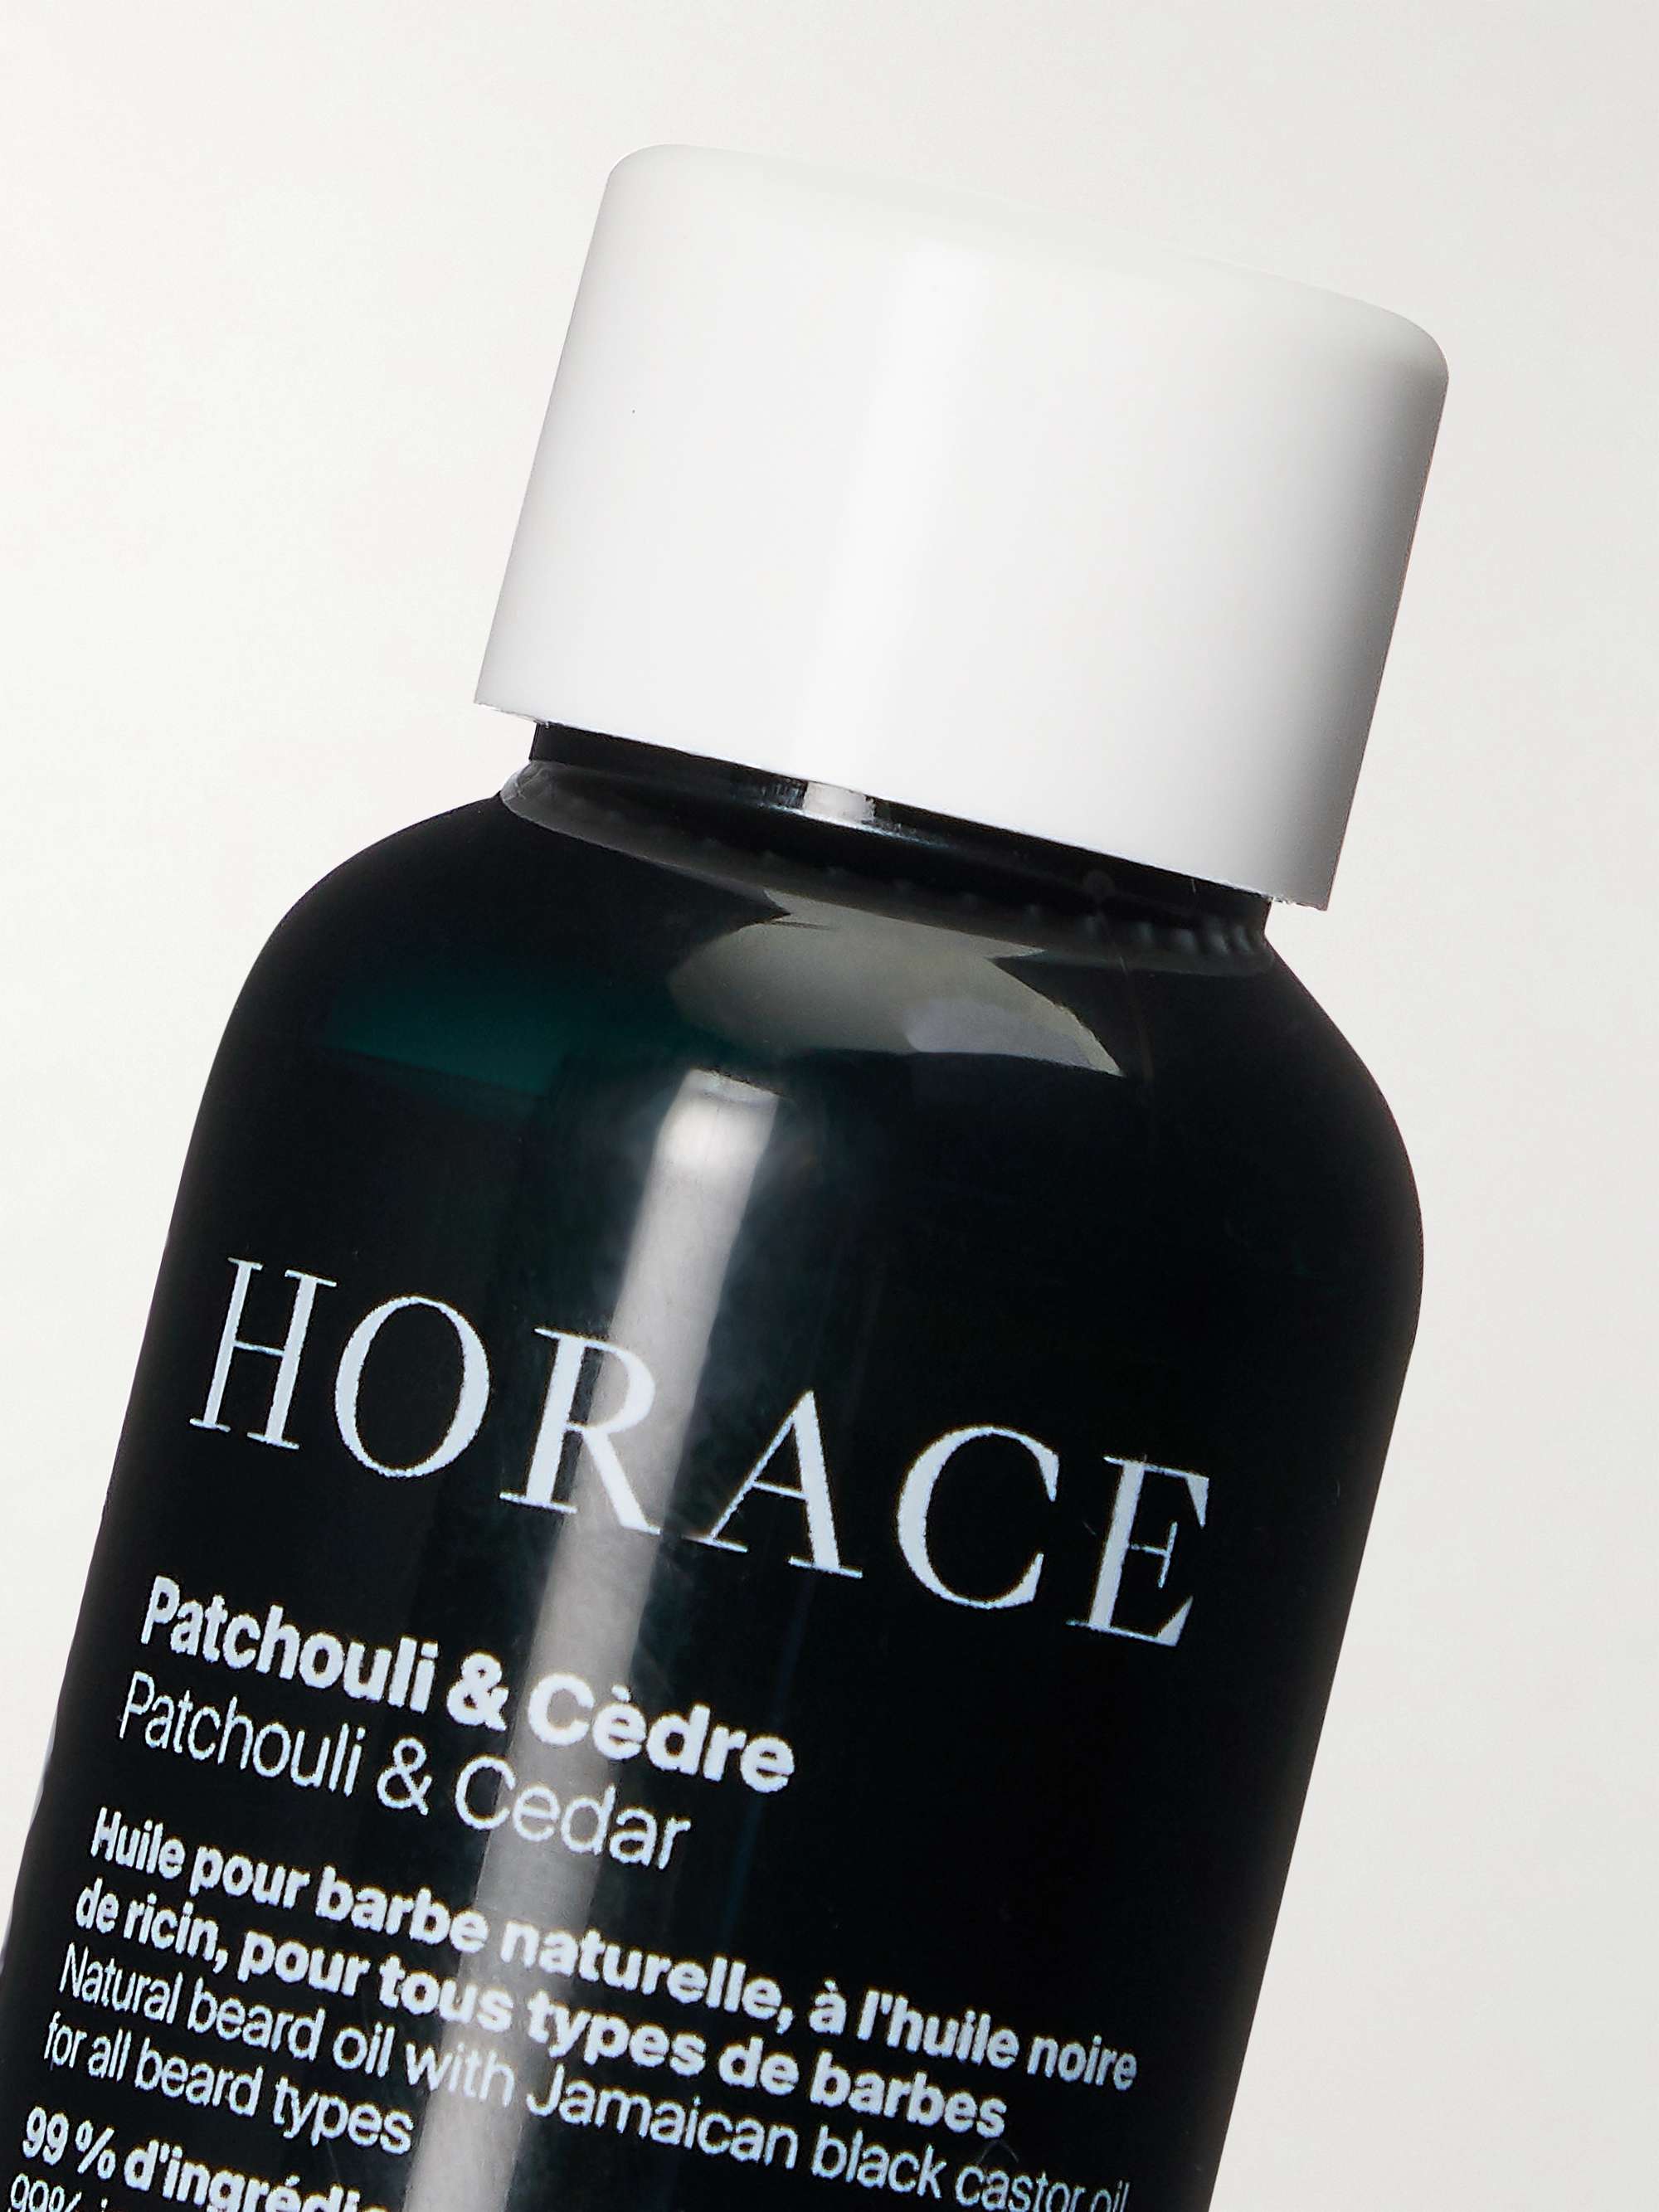 HORACE Patchouli & Cedar Beard Oil, 30ml